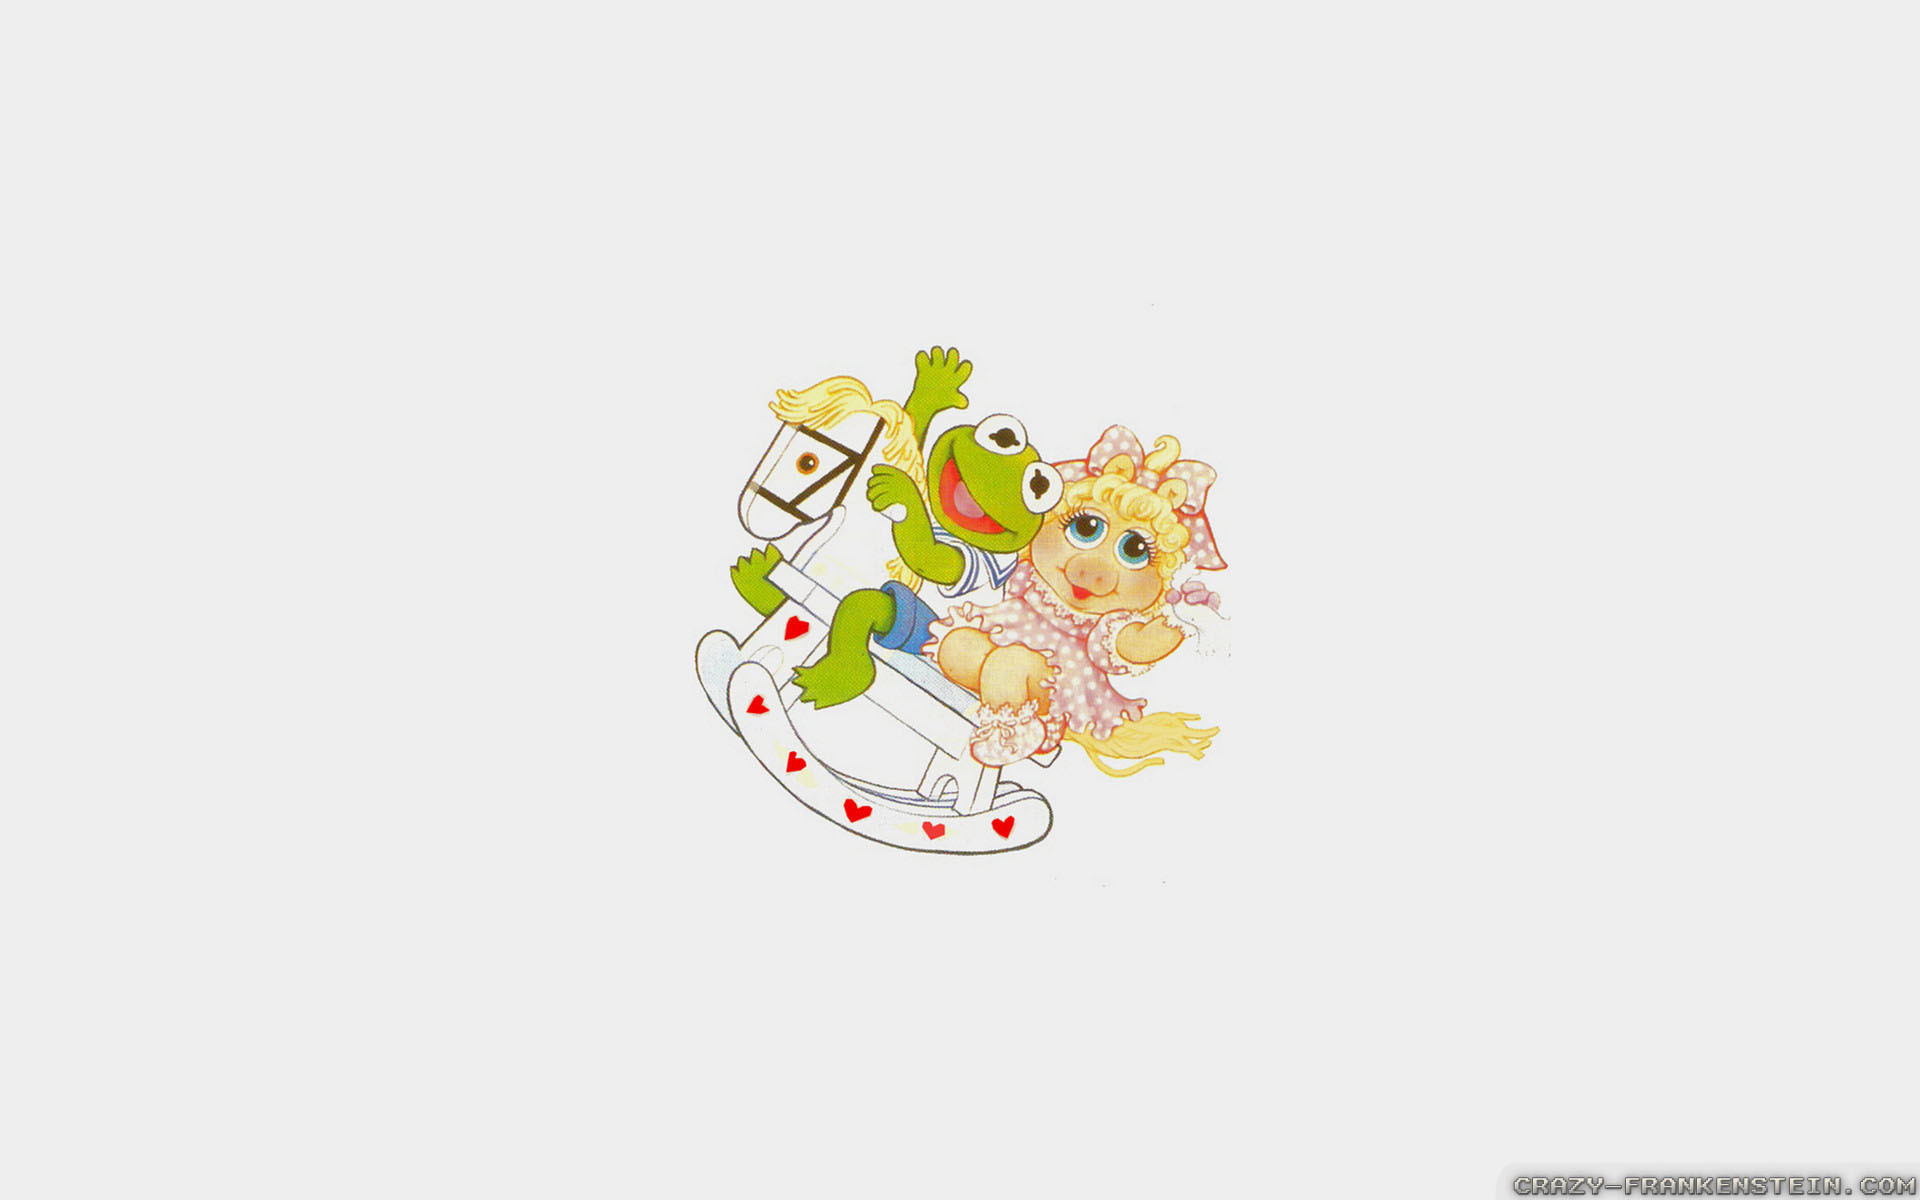 1920x1200 Wallpaper: Kermit miss piggy muppet babies. Resolution: 1024x768 |  1280x1024 | 1600x1200. Widescreen Res: 1440x900 | 1680x1050 | 